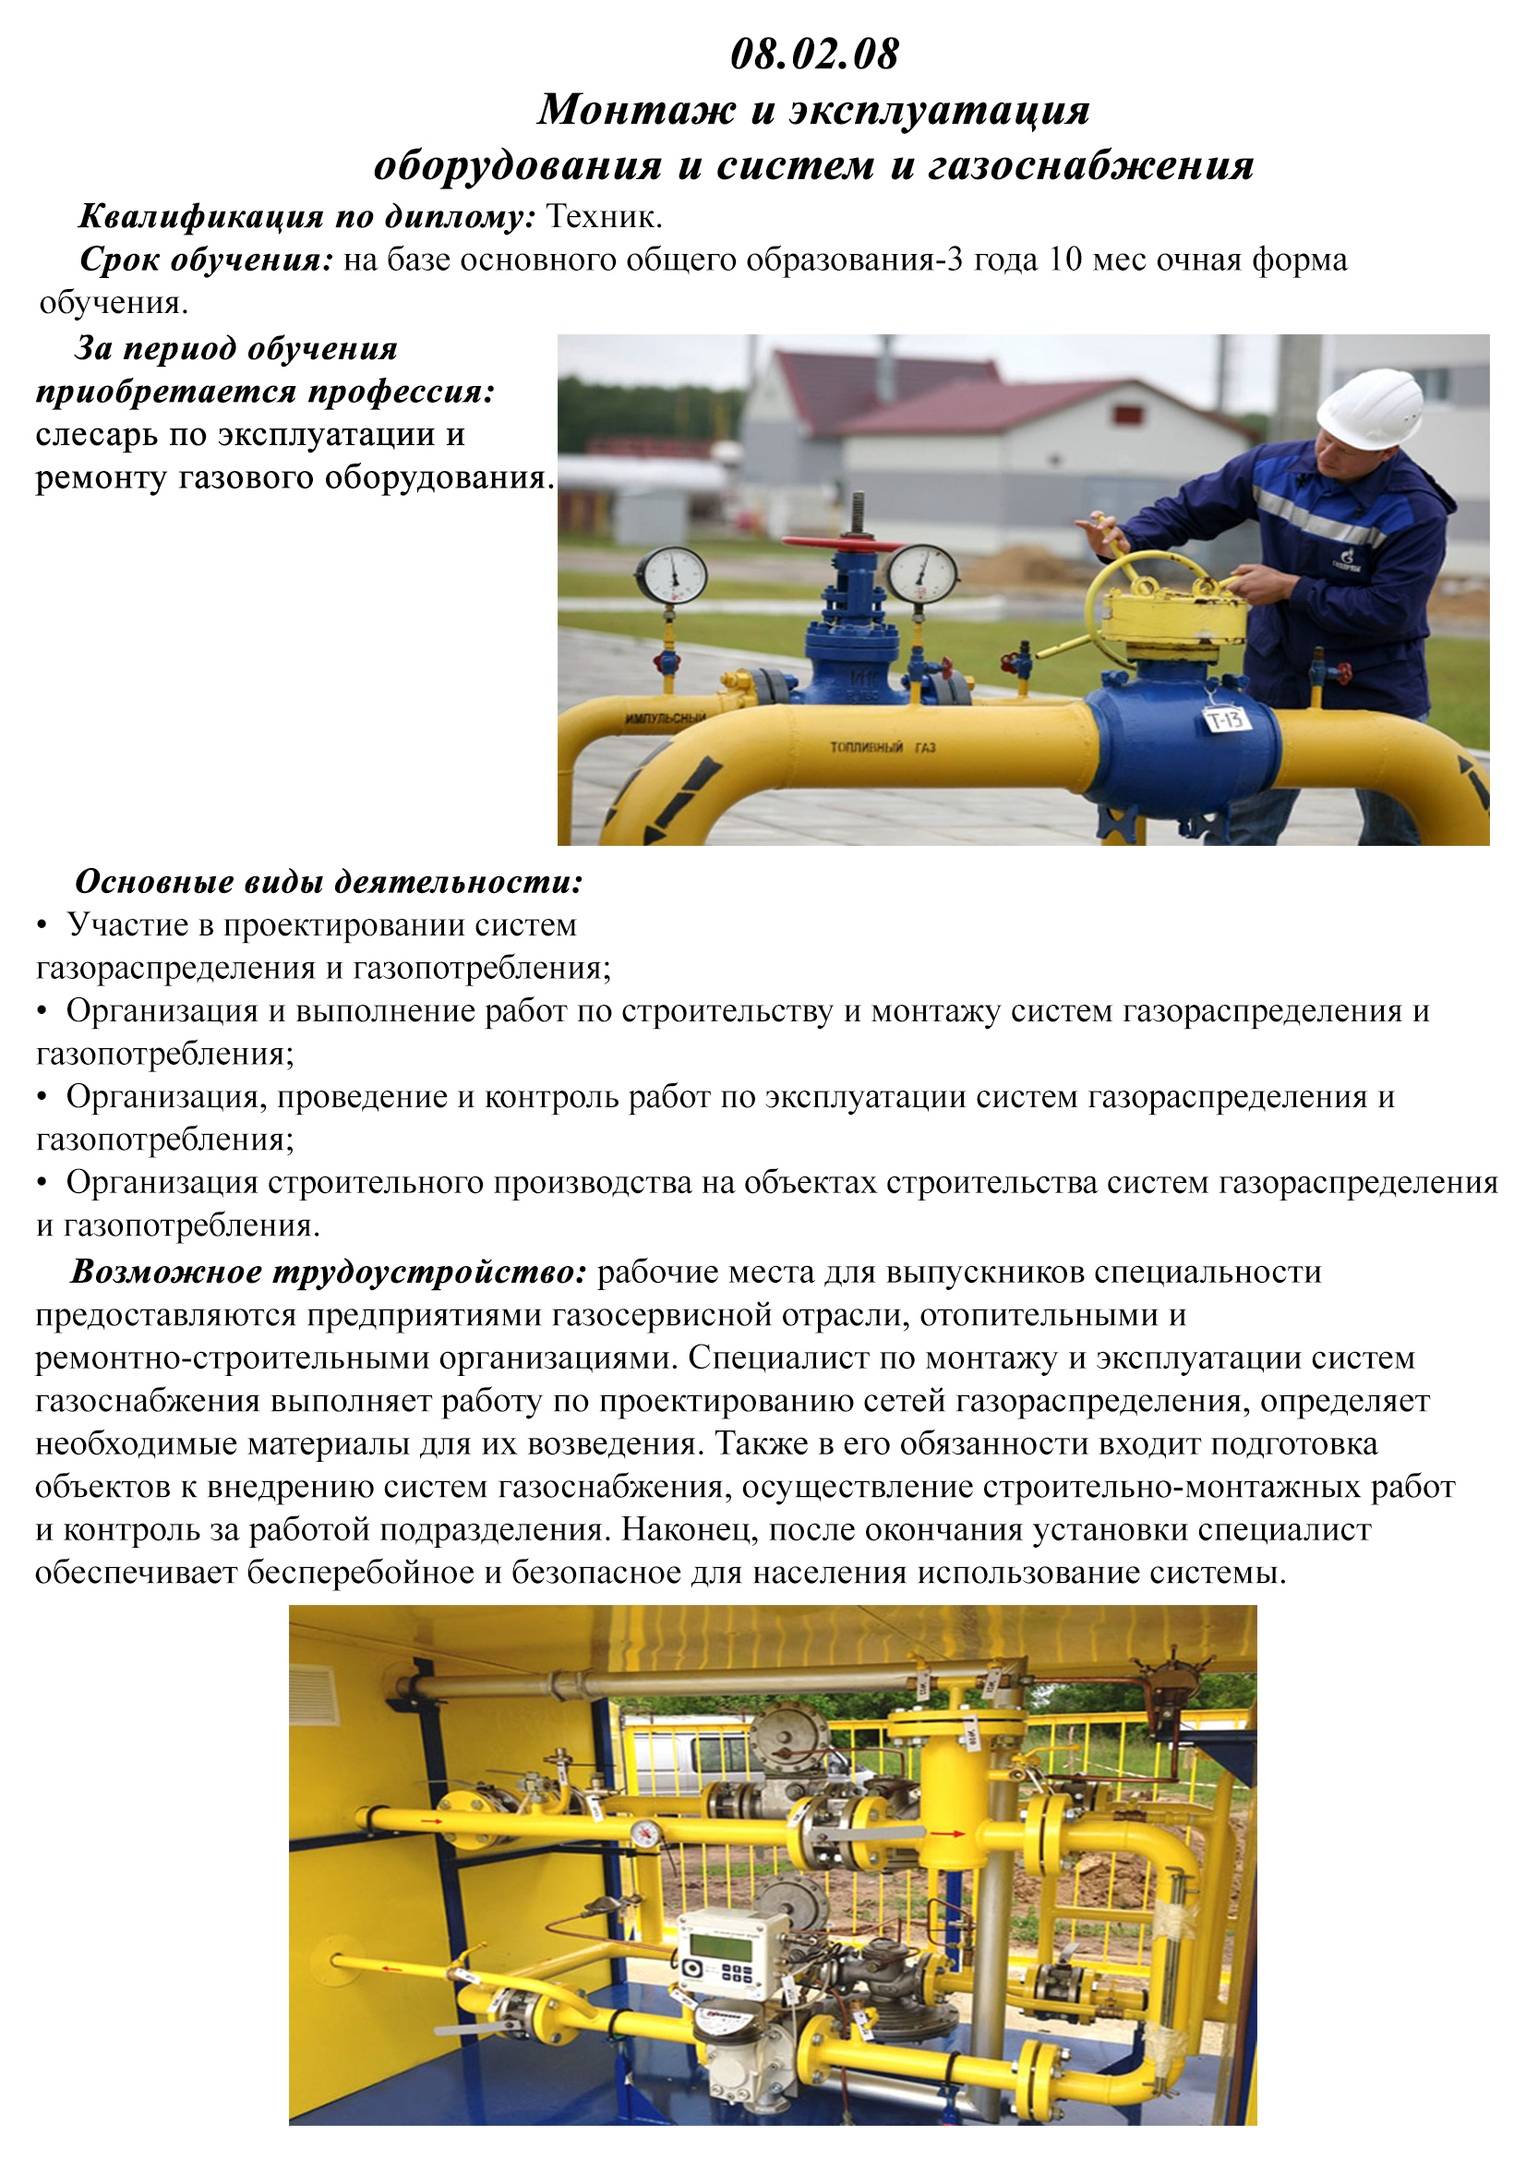 Монтаж и эксплуатация оборудования и систем газоснабжения (08.02.08) среднее профессиональное образование